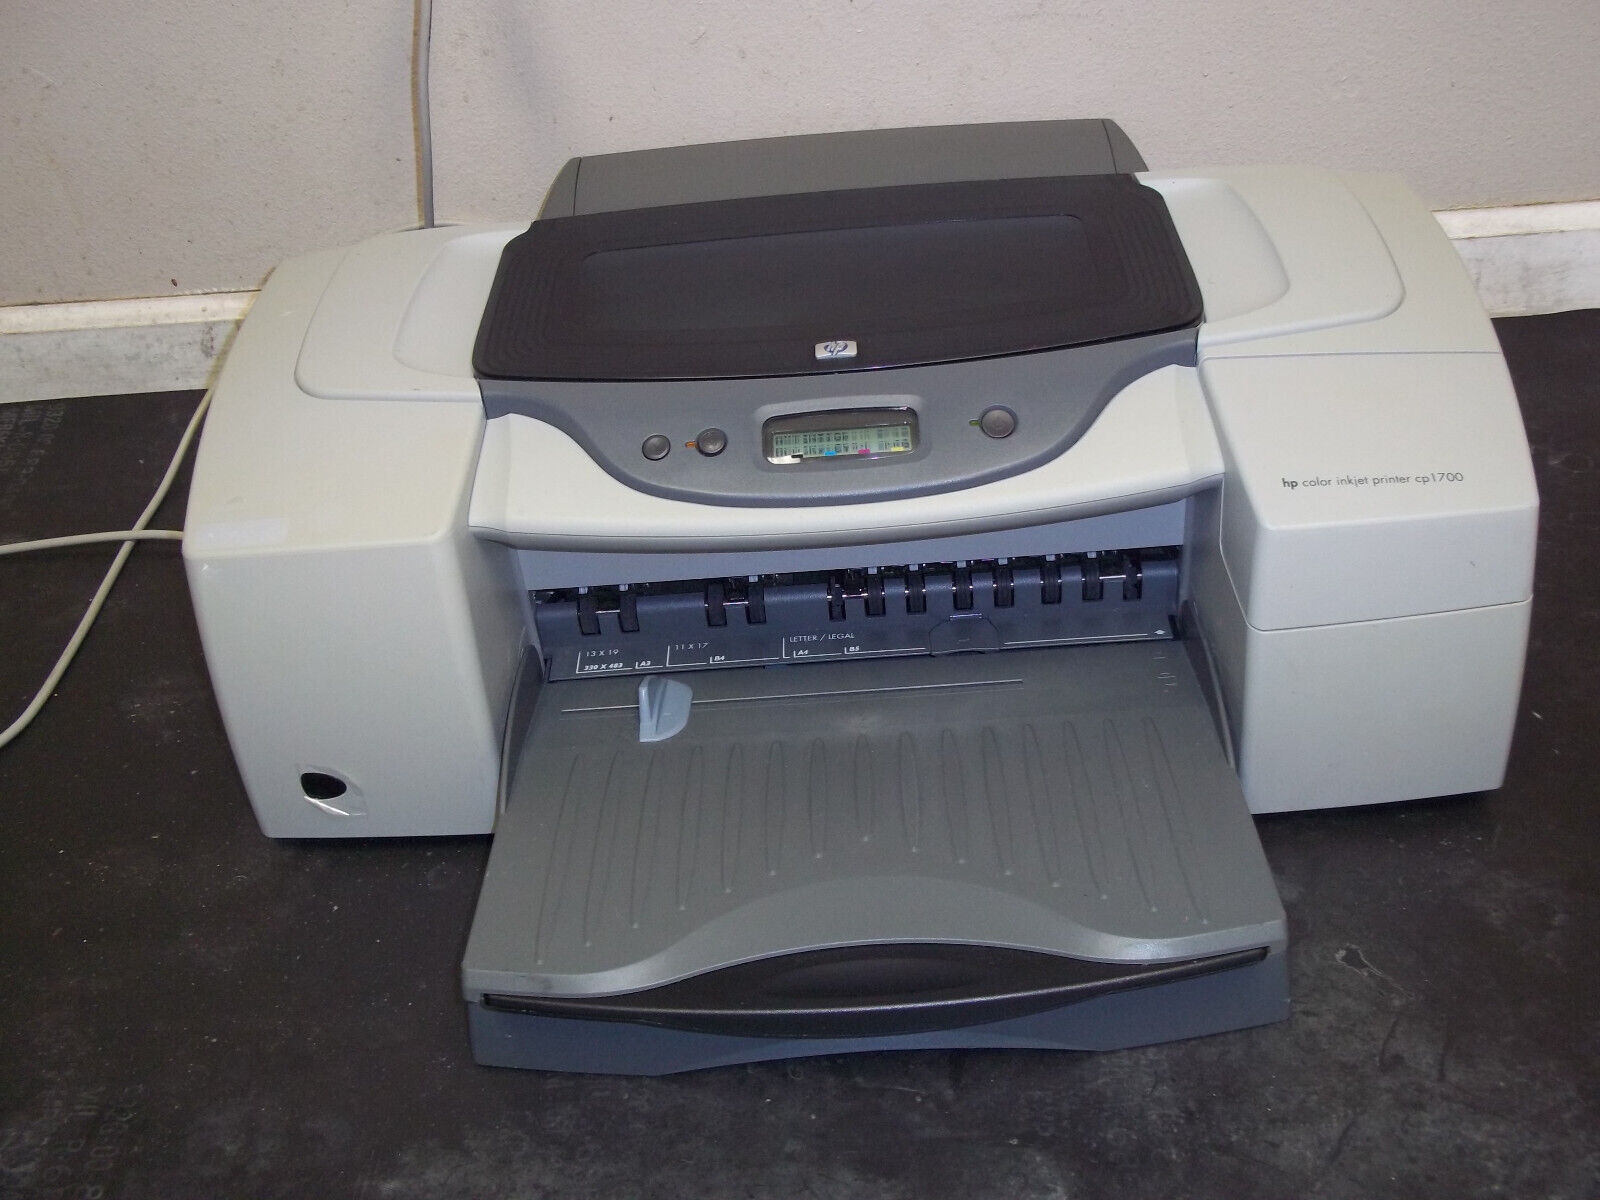 HP Color  Inkjet Printer CP1700  